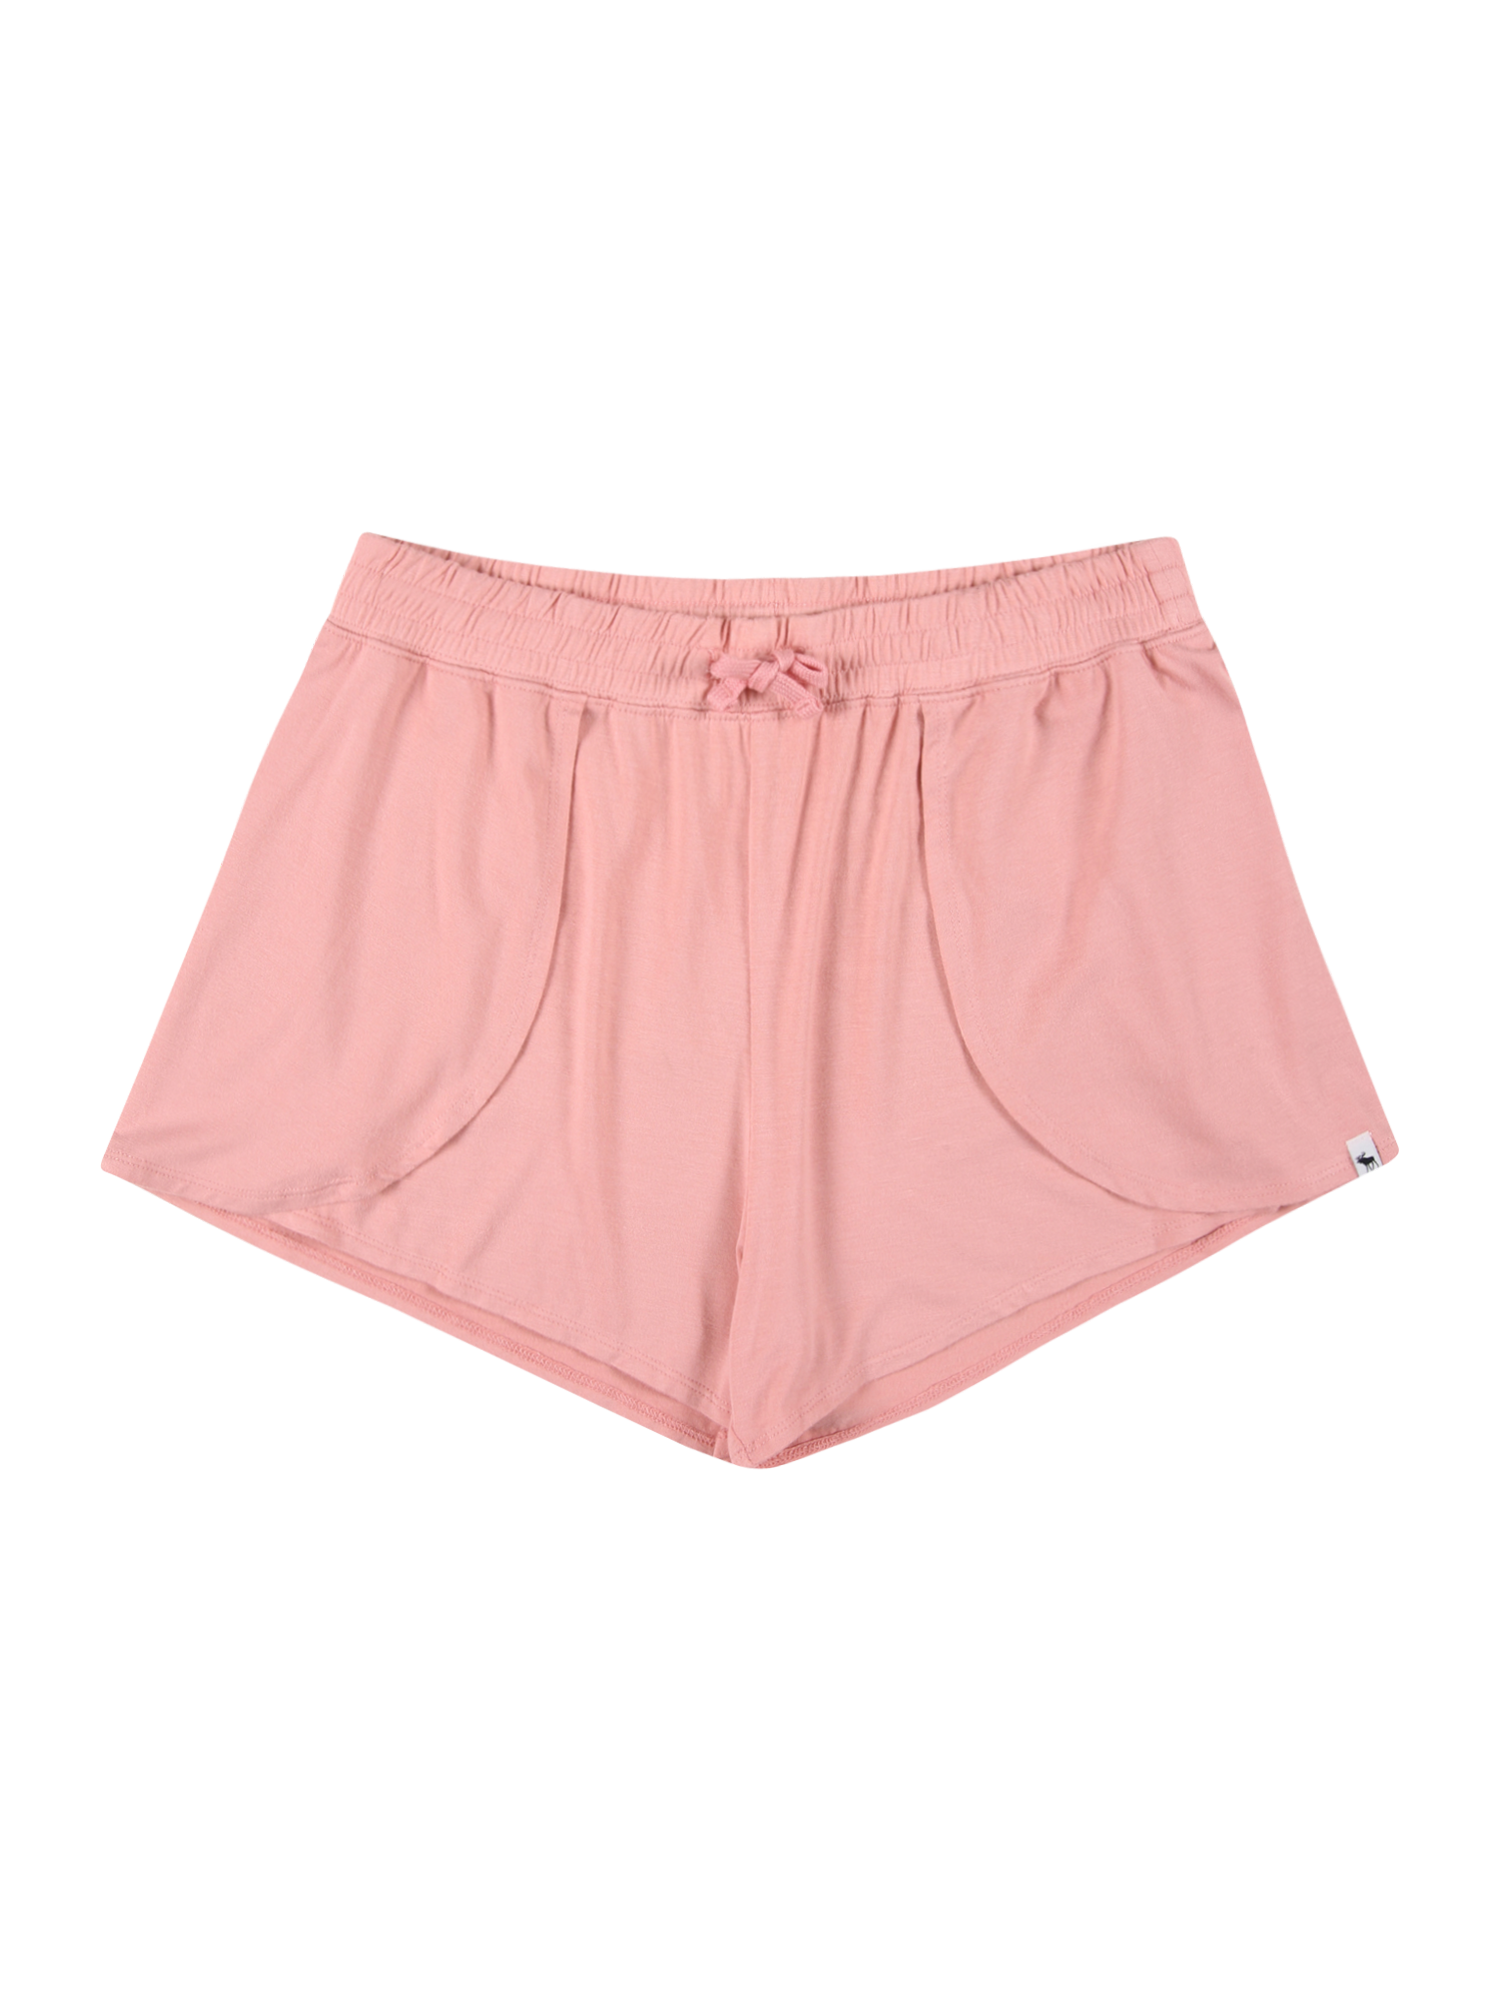 22WPn Dzieci Abercrombie & Fitch Spodnie w kolorze Różowym 